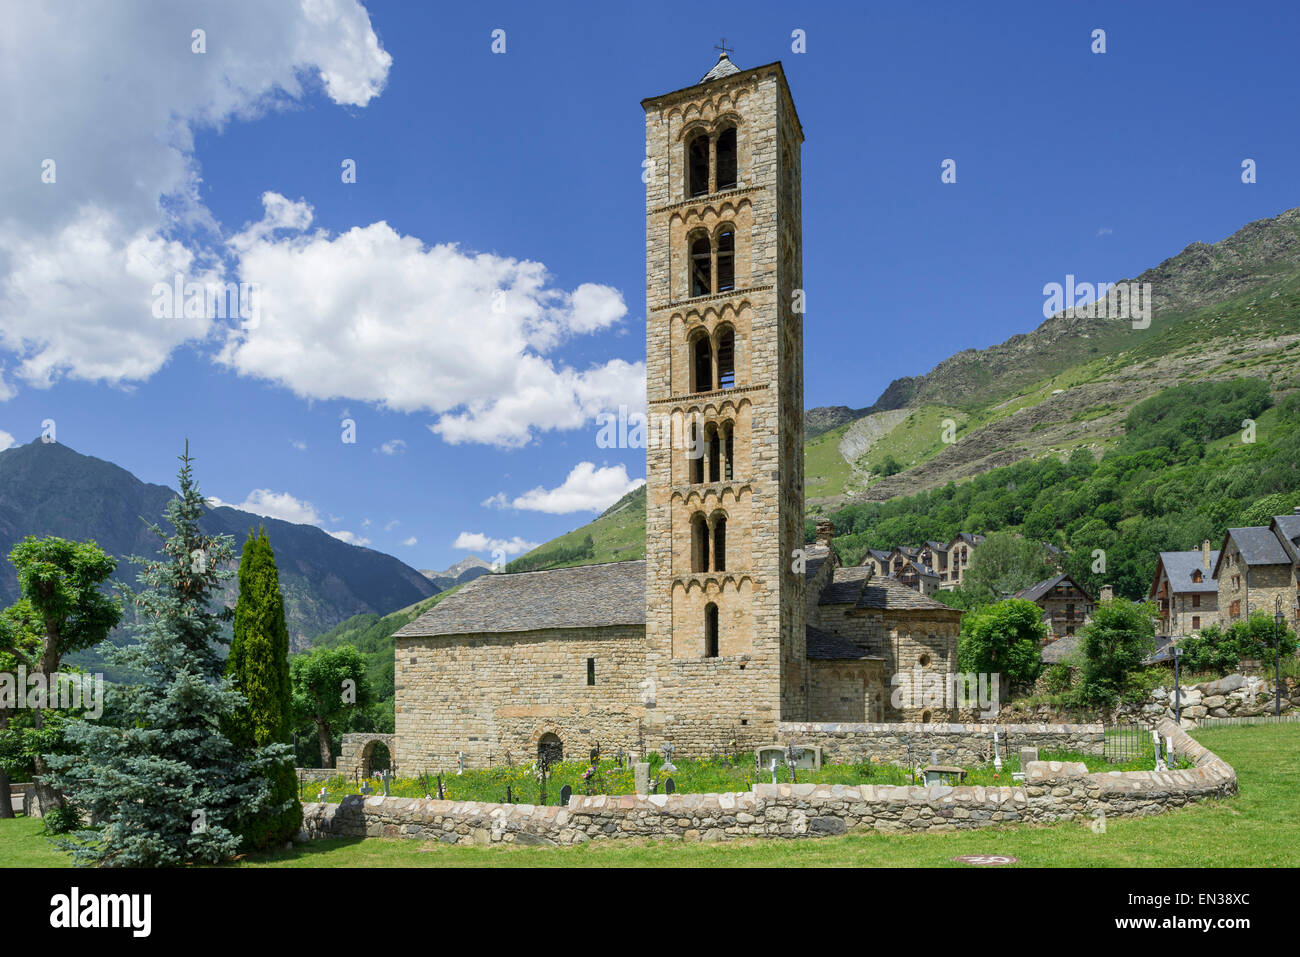 Romanesque church of Sant Climent de Taüll, Unesco World Heritage Site, Vall de Boí, Taüll, Catalonia, Spain Stock Photo